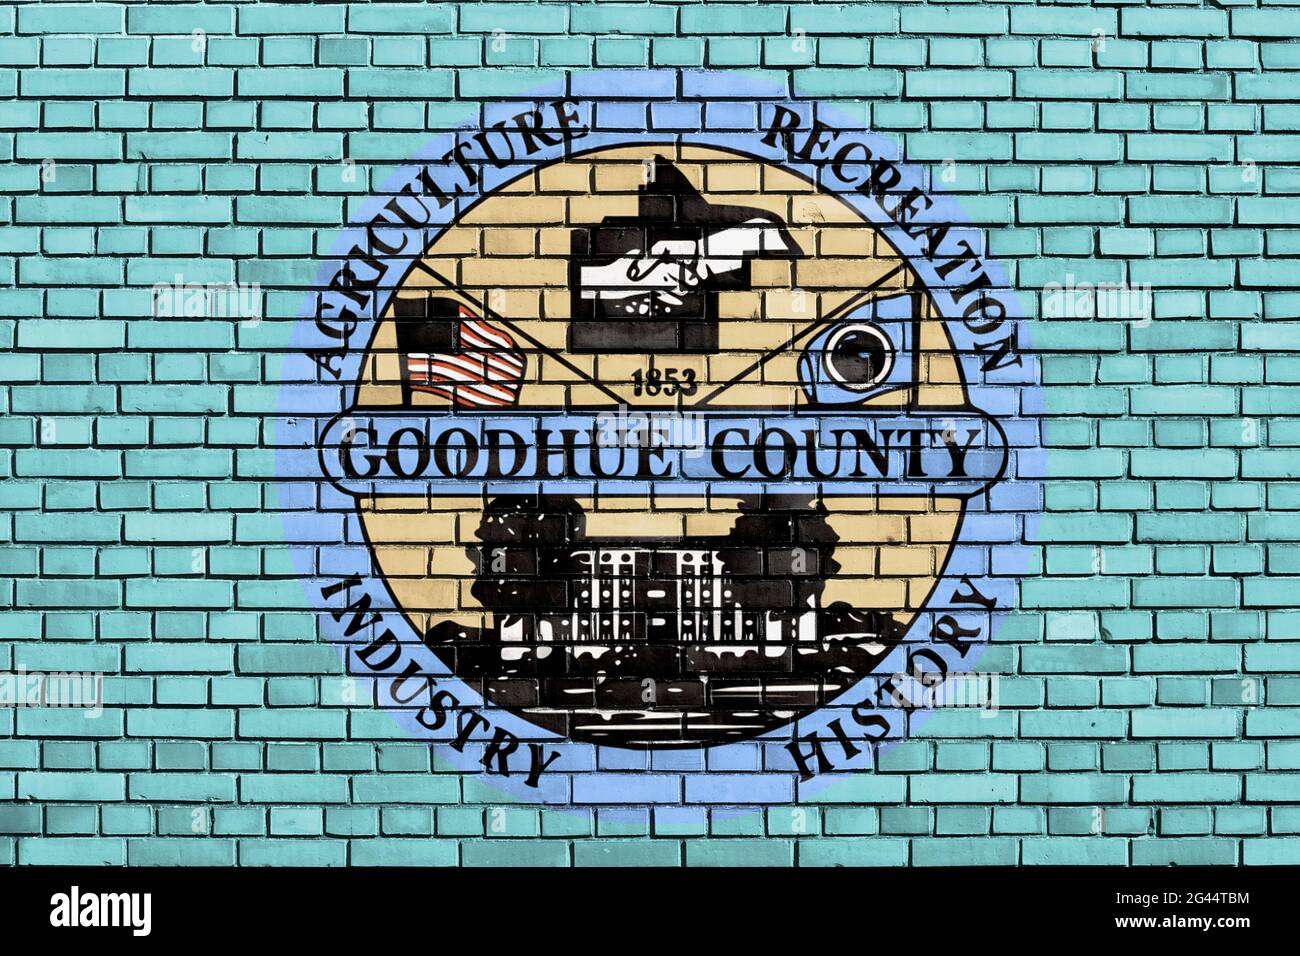 Bandera del Condado de Goodhue, Minnesota pintada en la pared de ladrillo Foto de stock